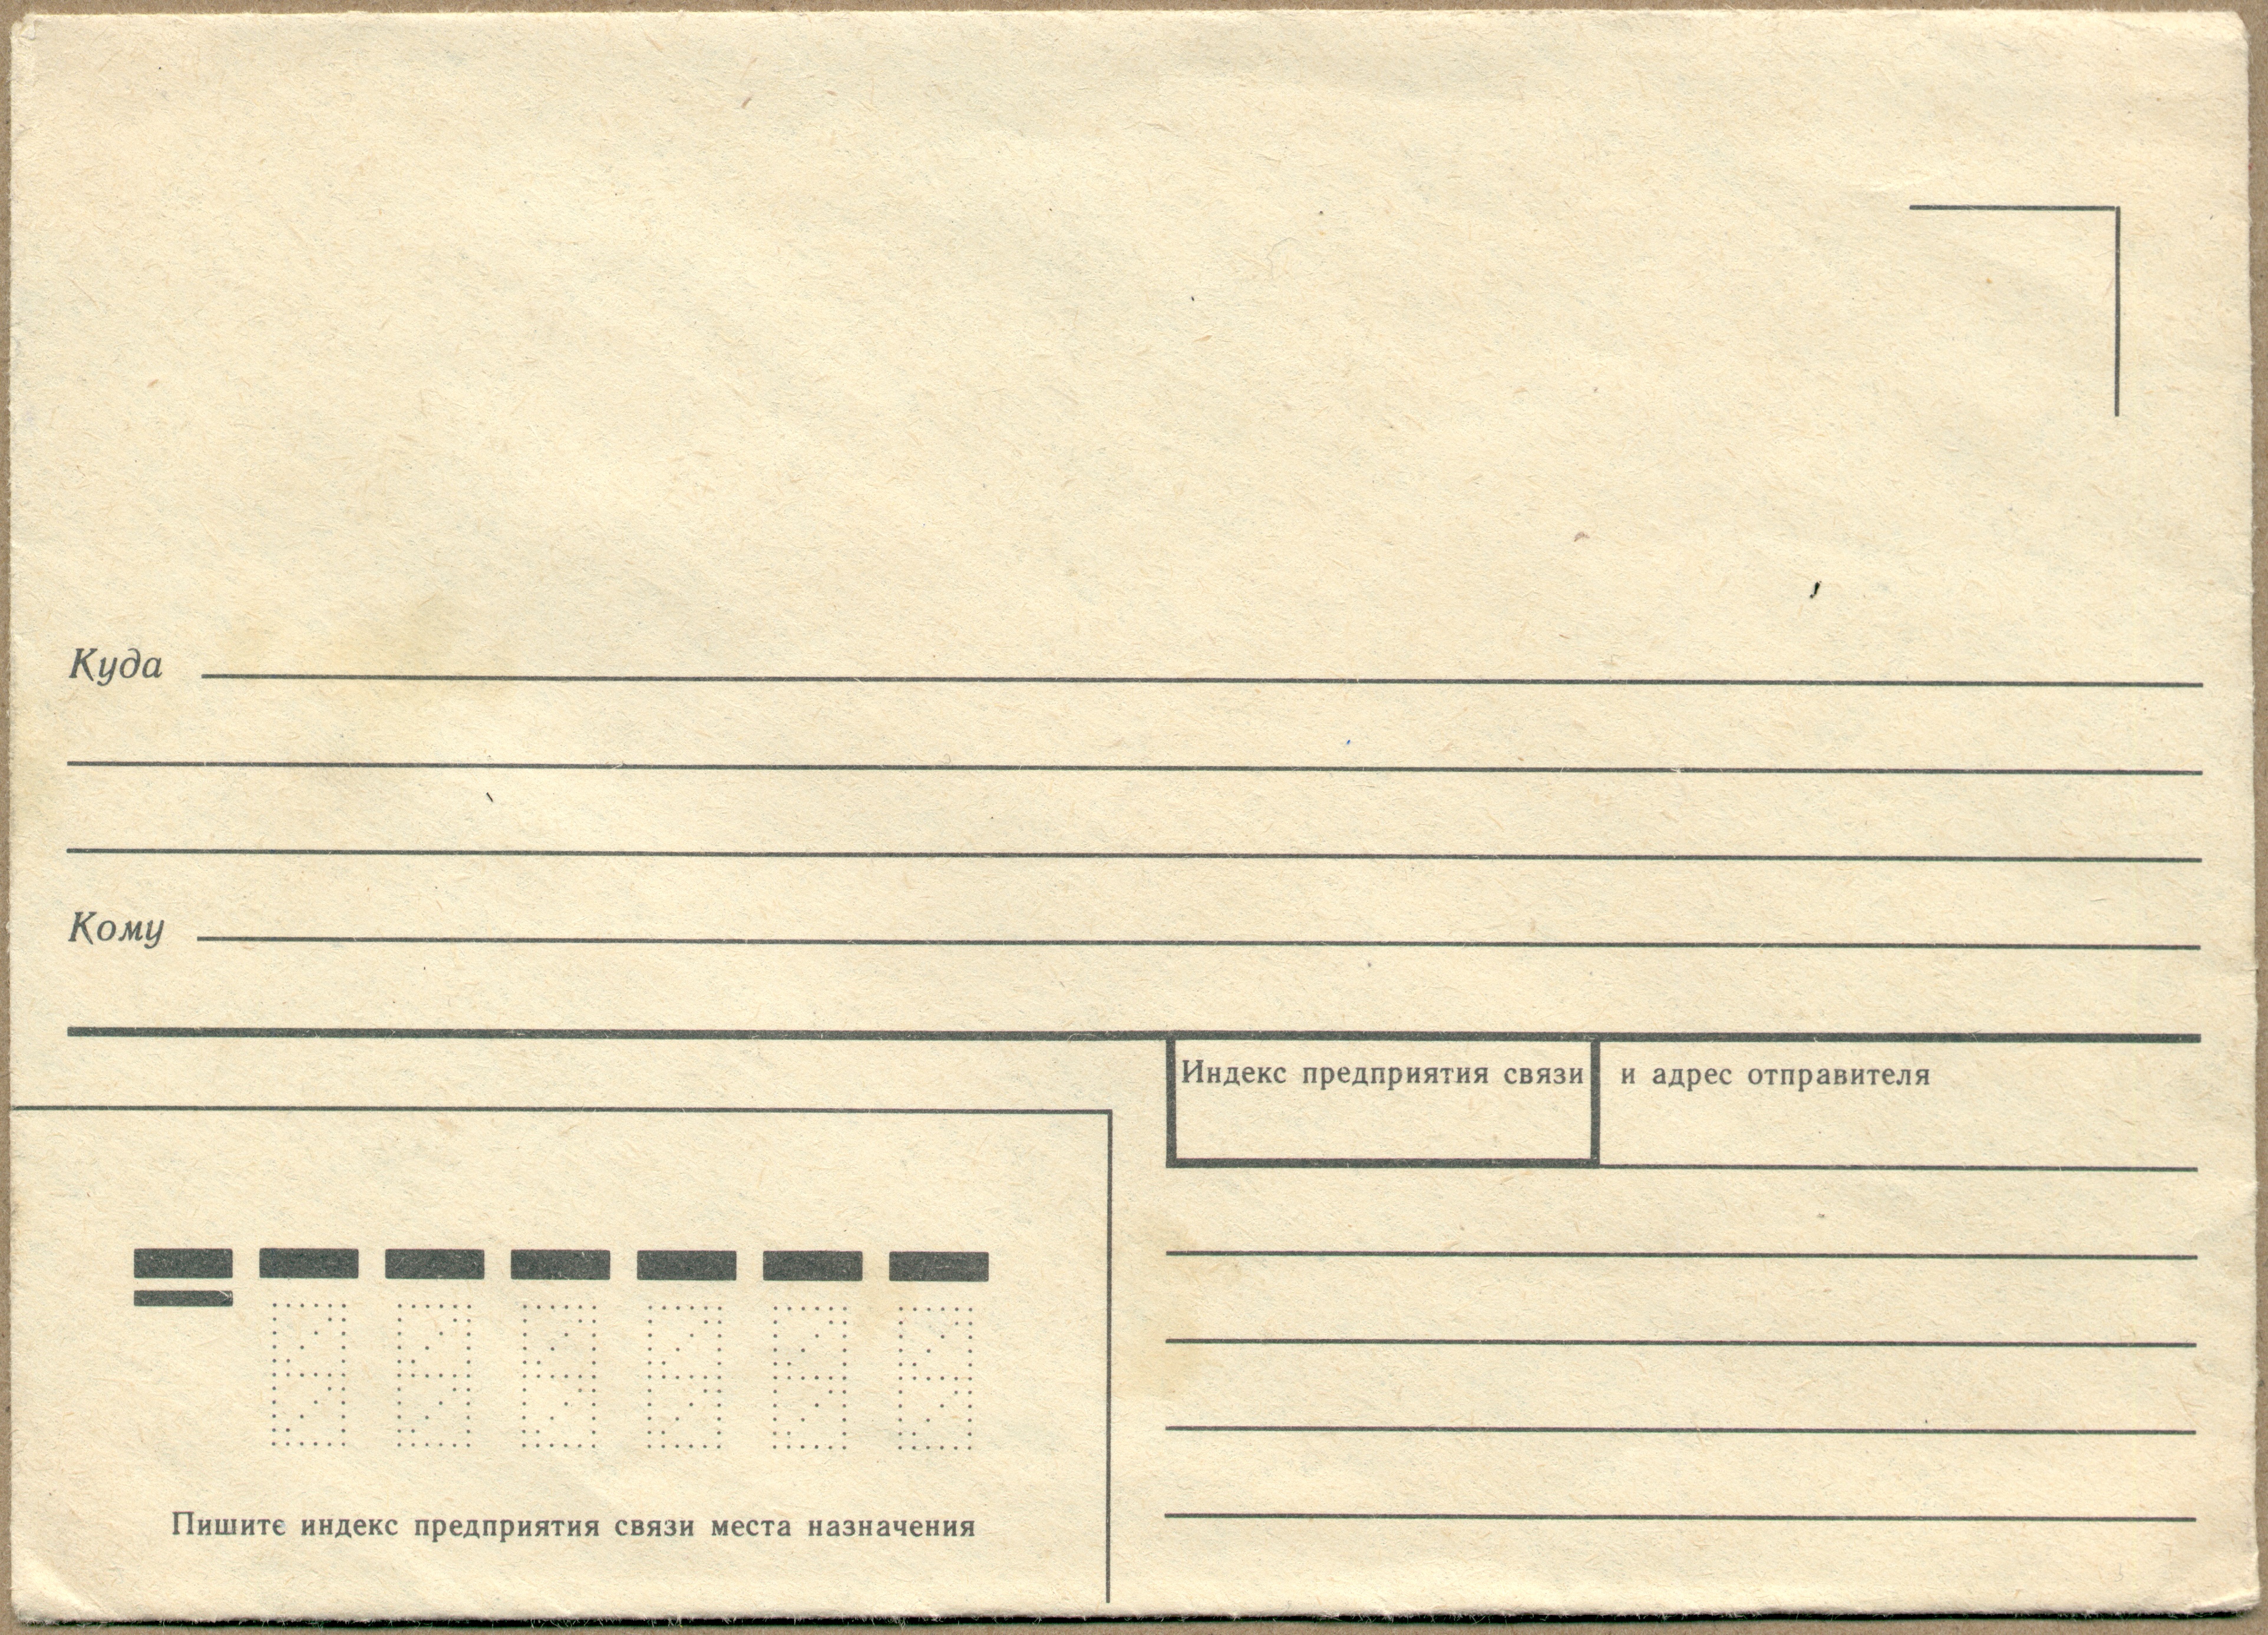 Куда com. Старый конверт для письма. Старинные почтовые конверты. Советский конверт. Советские почтовые конверты.